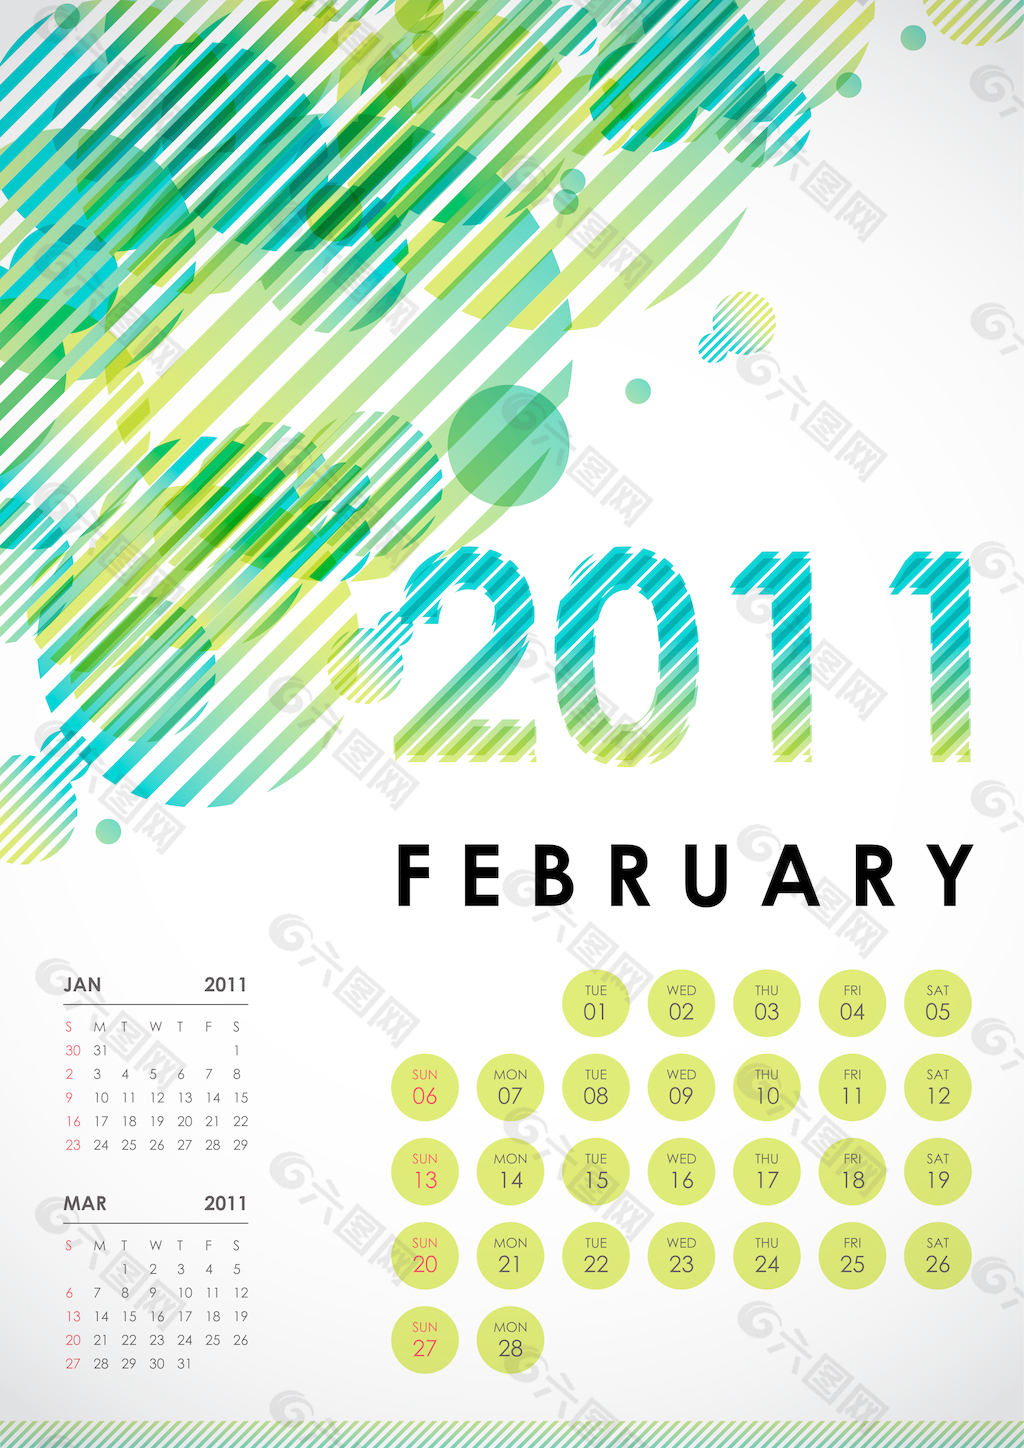 2011—二月日历设计